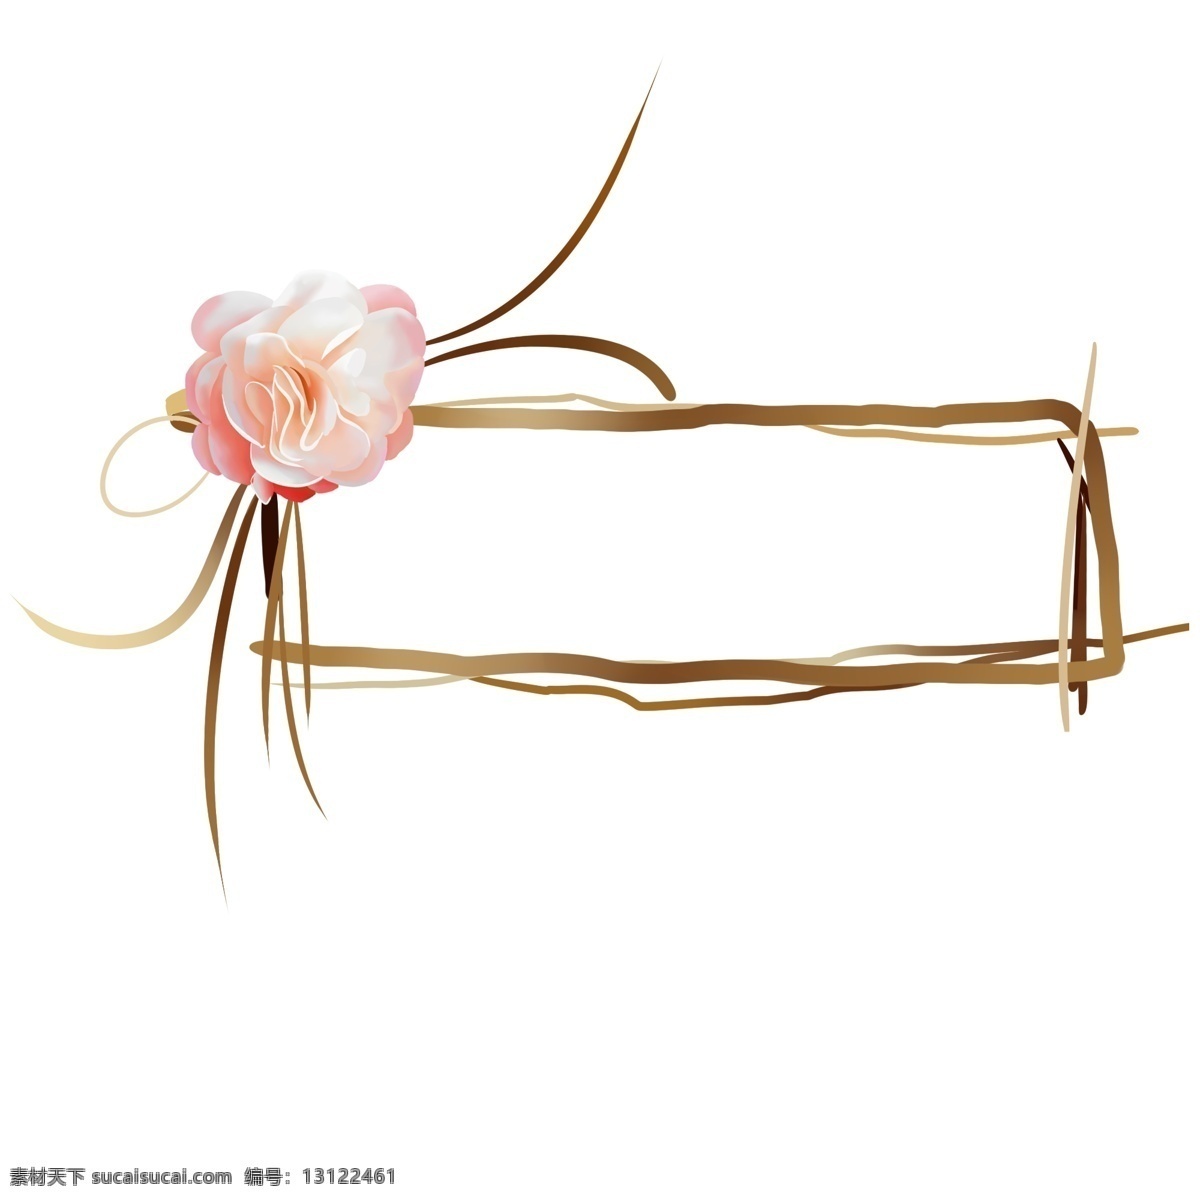 手绘 爱情 玫瑰 插画 粉色的玫瑰 盛开的玫瑰 卡通插画 手绘爱情插画 棕色的框框 漂亮的玫瑰